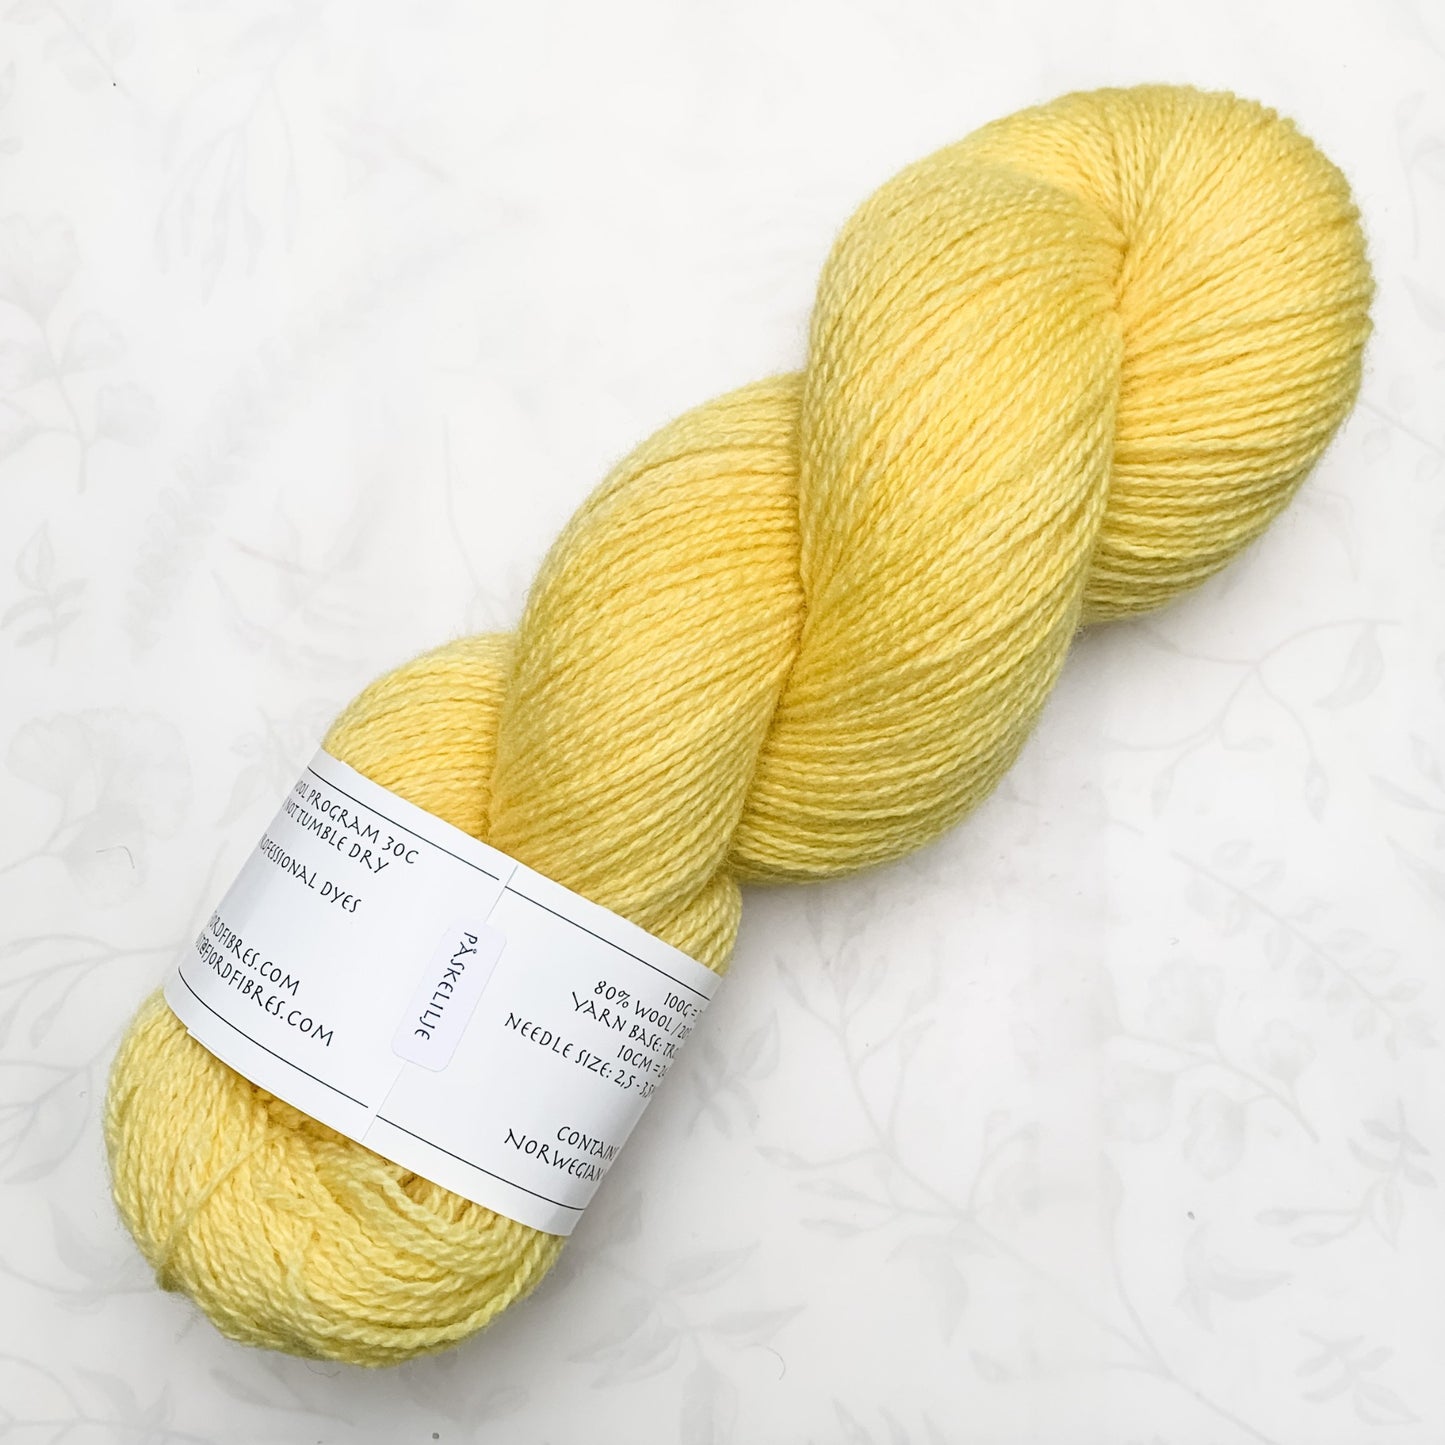 Påskelilje - Trollfjord sock - Hand Dyed Yarn - Tonal Yarn